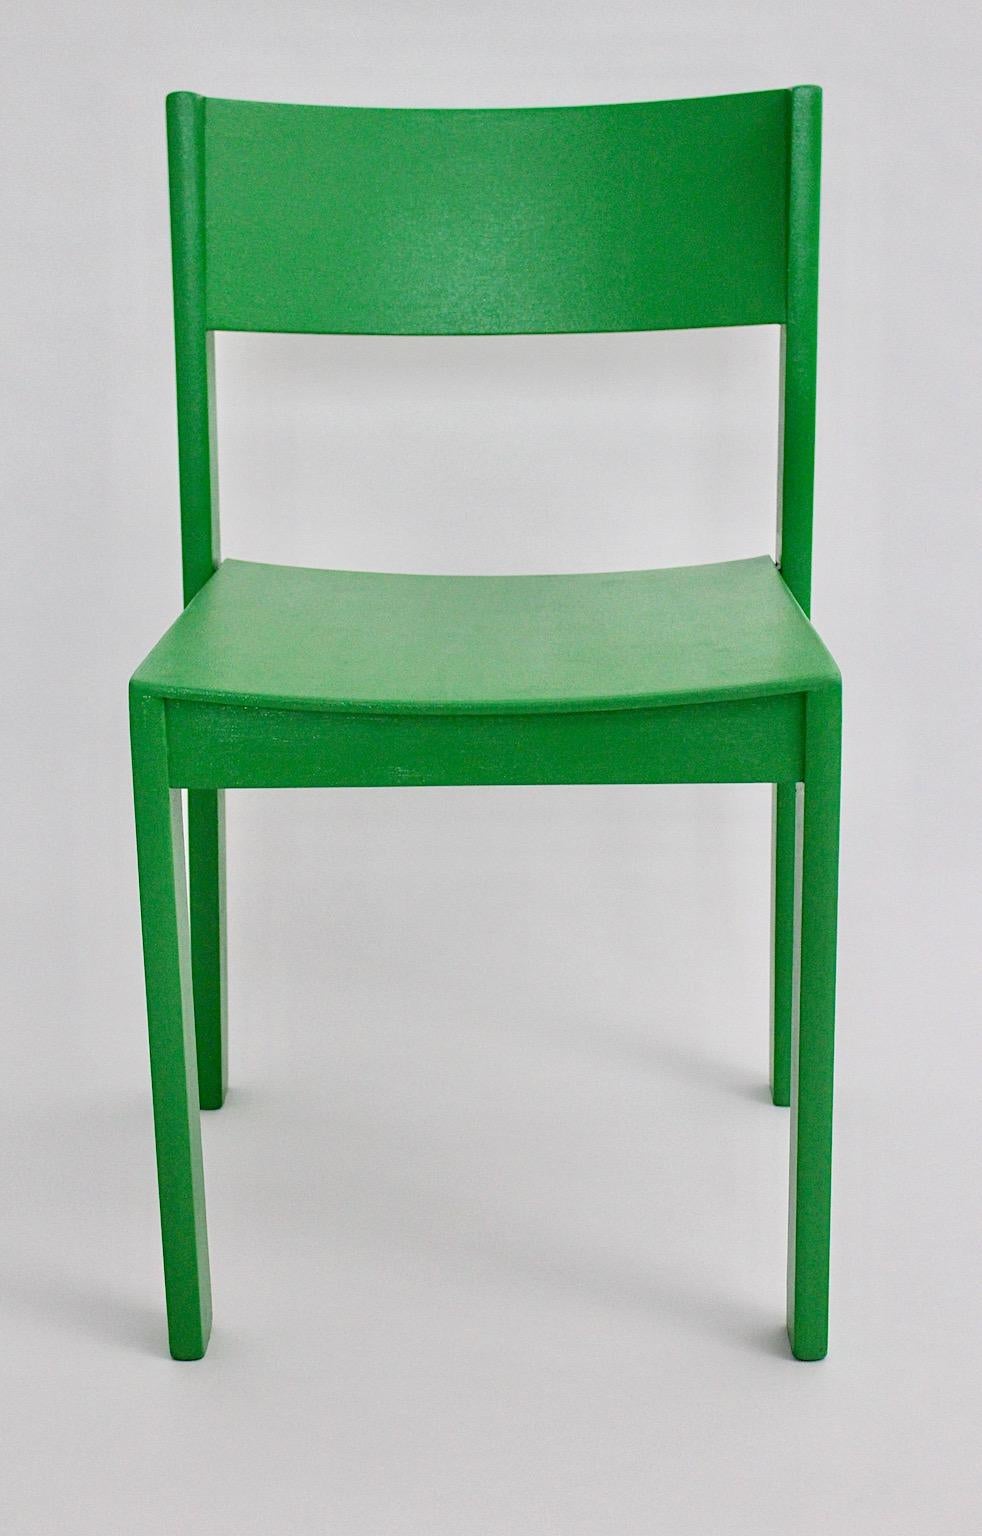 Modernist Mid-Century Modern zwölf ( 12 ) vintage Esszimmerstühle aus Buche in grüner Farbe entworfen und hergestellt 1950er Jahre Österreich.
Ein fabelhaftes Set von zwölf Esszimmerstühlen aus Buche neu lackiert in kräftiger grüner Farbe mit einer